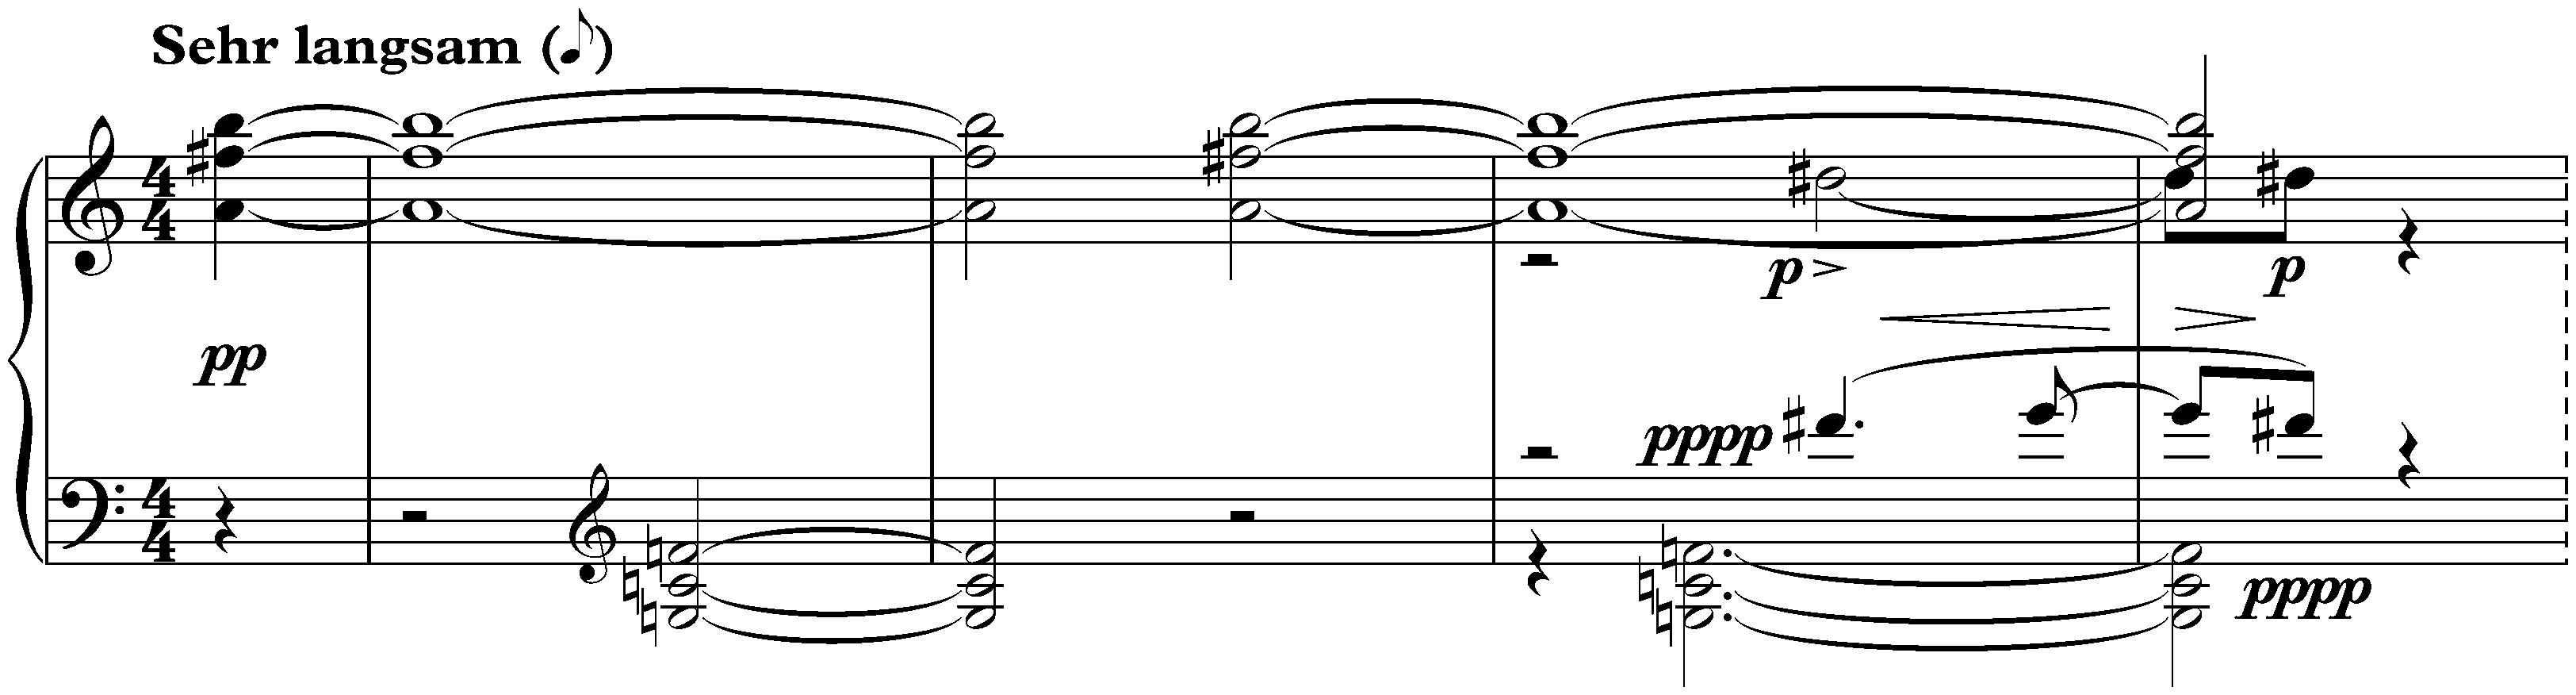 Sechs kleine Klavierstücke, op. 19; 6. Sehr langsam